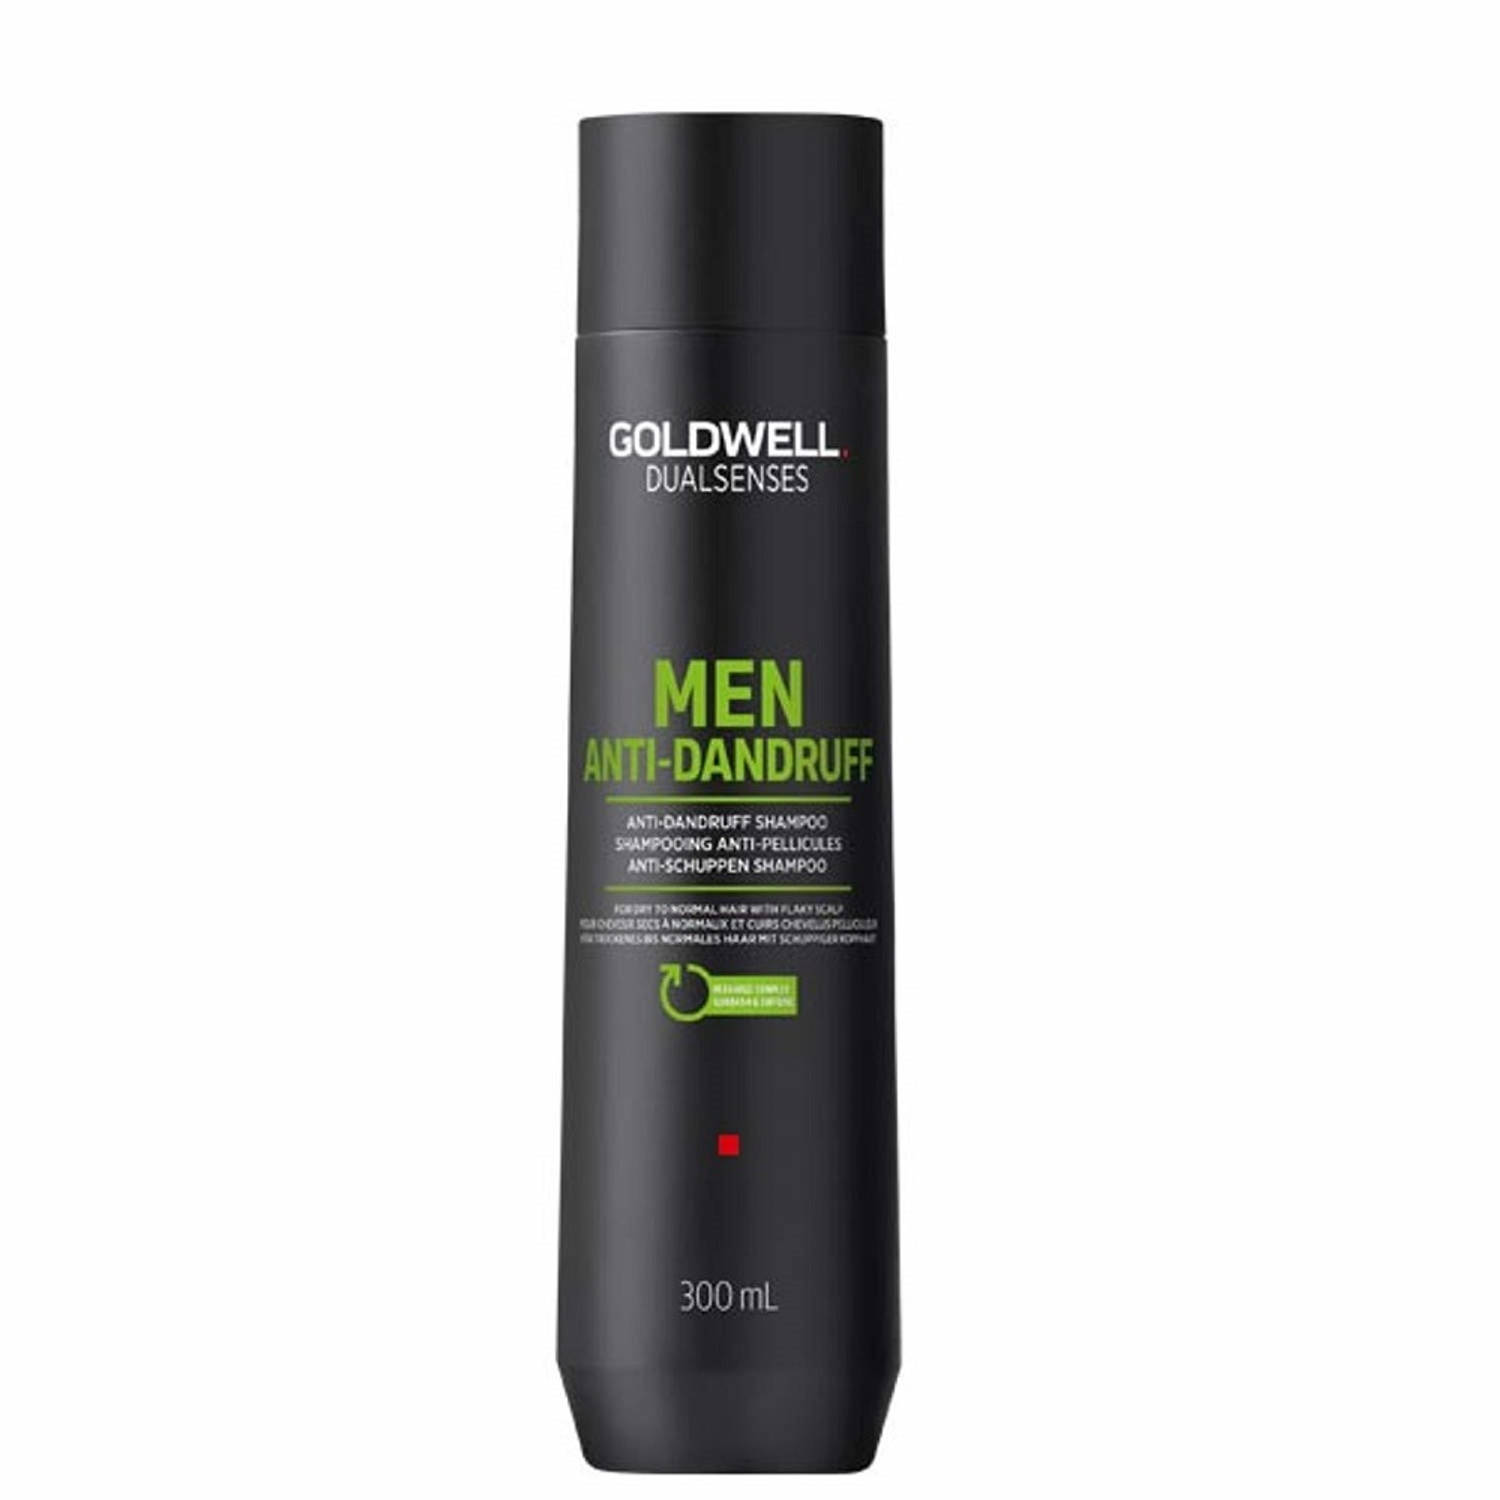 Dualsenses Men Anti-Dandruff Shampoo 300ml